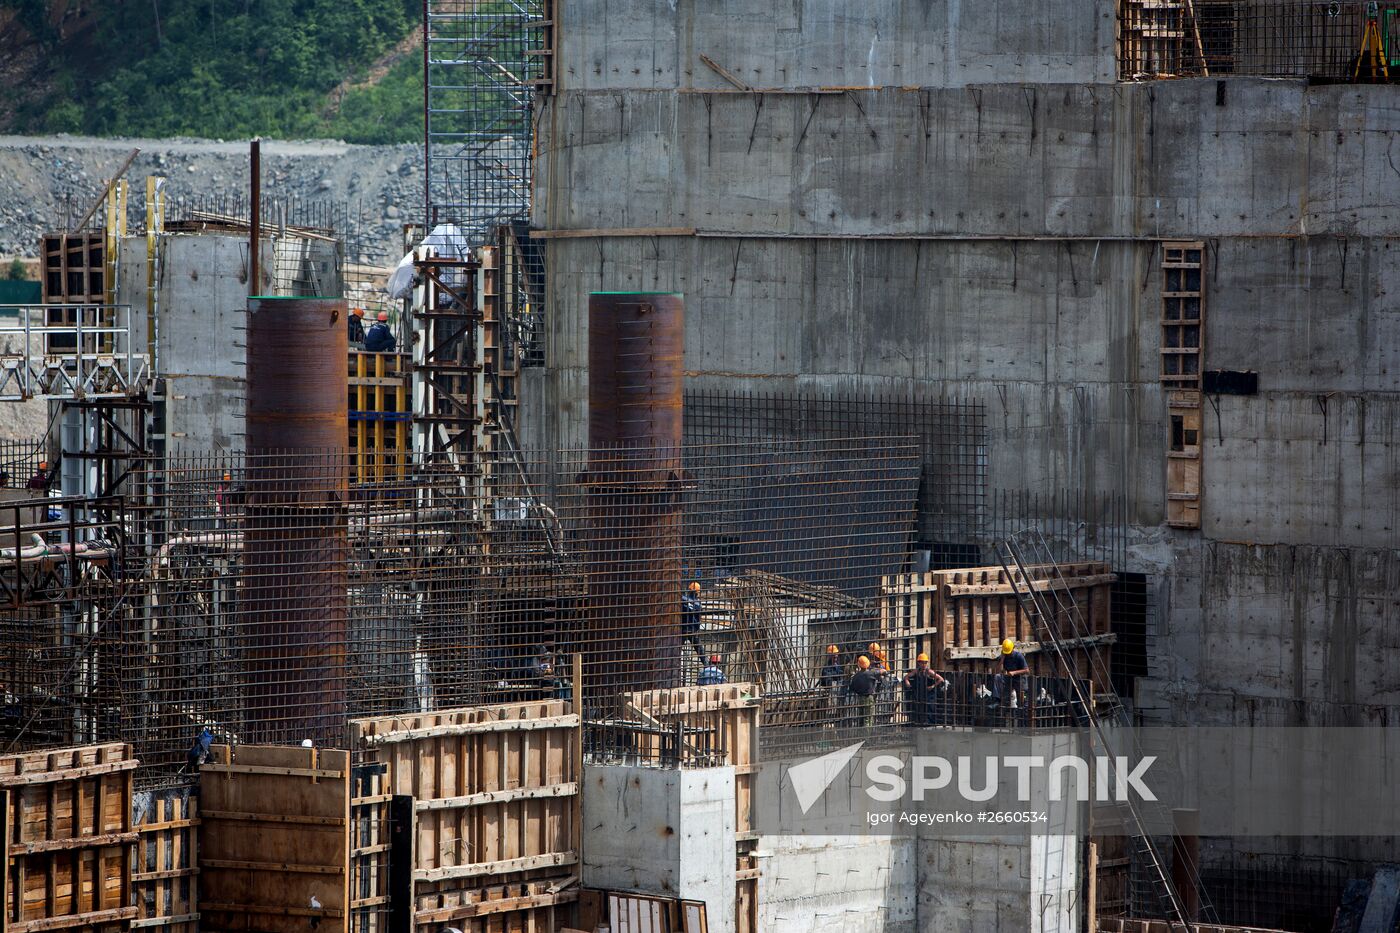 Nizhne-Bereiskaya Hydro Power Plant